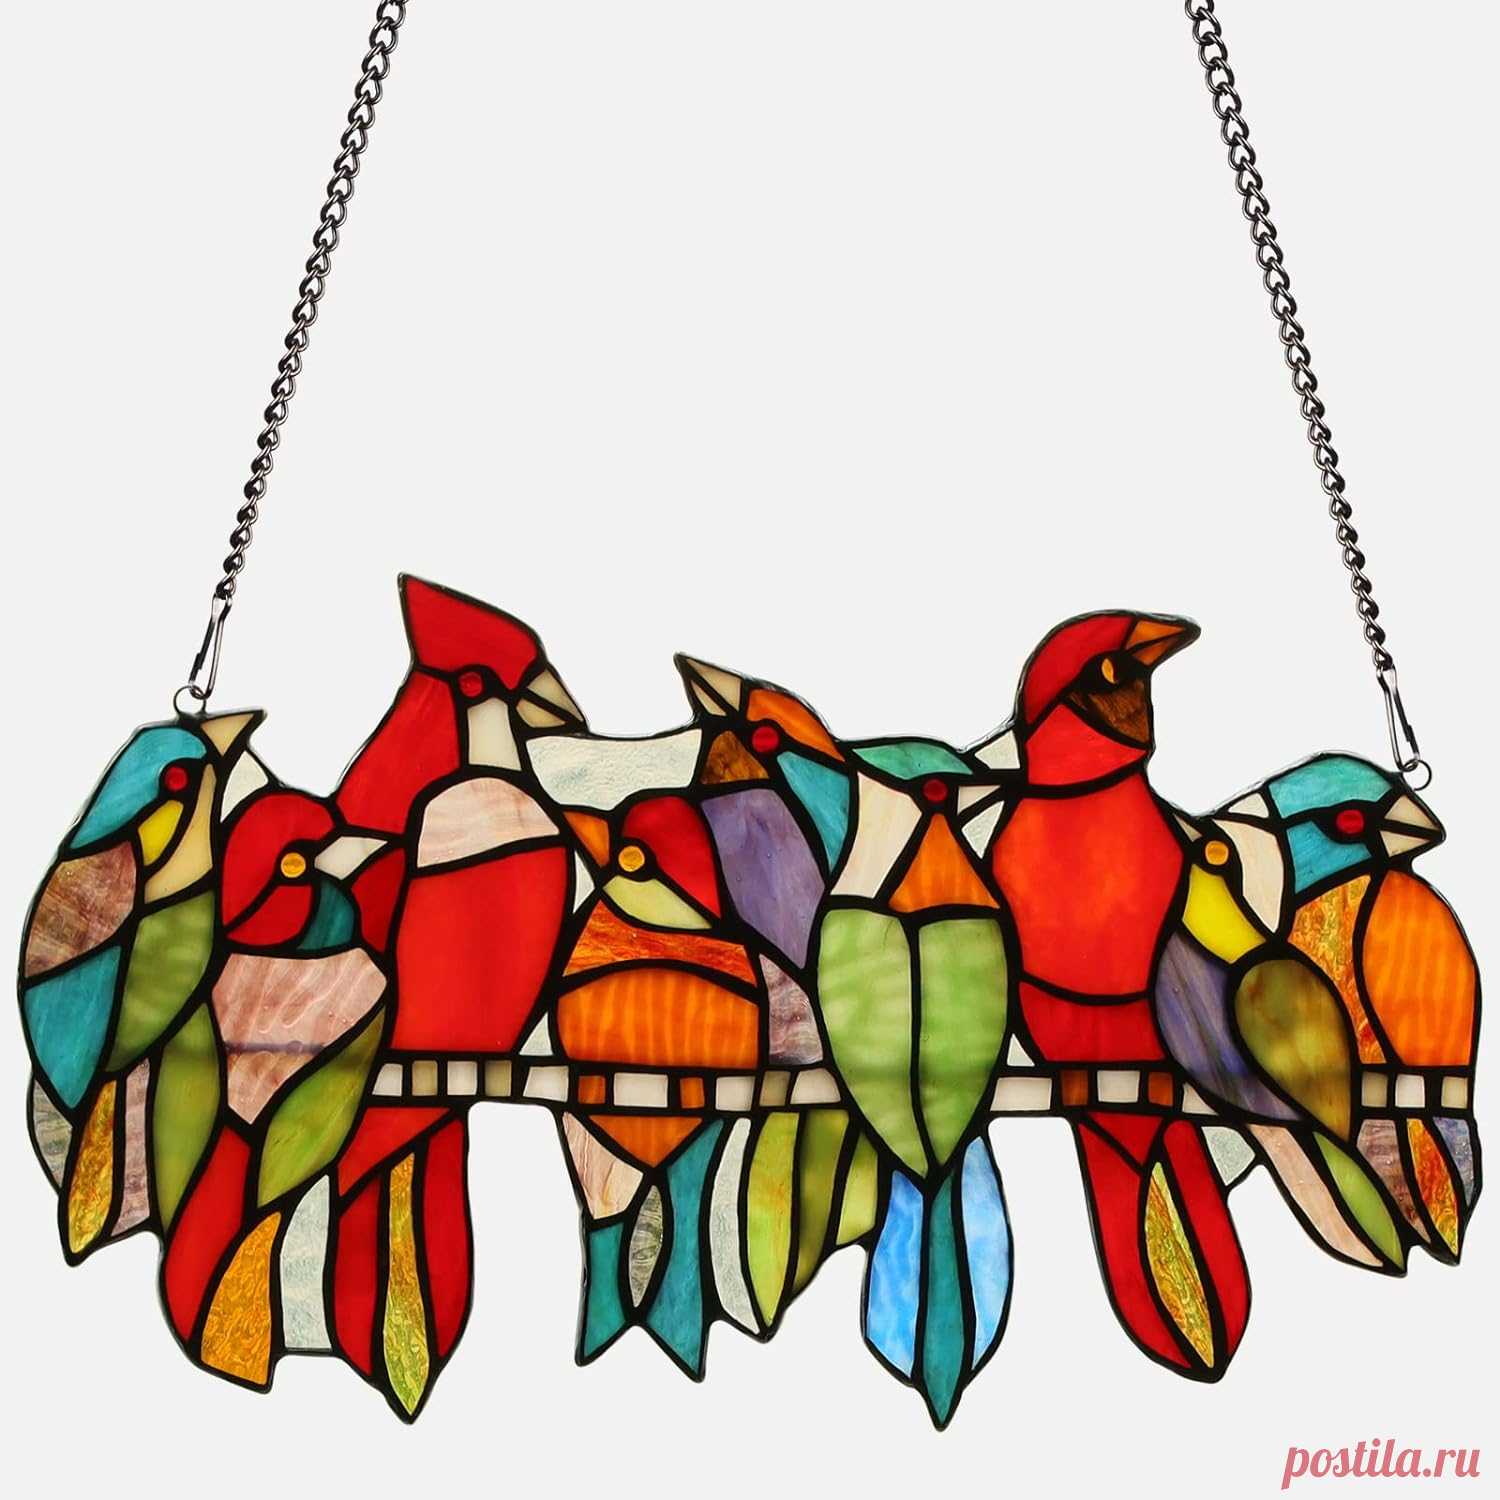 Amazon.com: Kleeglee Colgantes de vidrieras de pájaros, hecho a mano, atrapasoles vitrales, regalos cardenales de colibríes, paneles de vidrieras para decoración de ventanas (9 pájaros) : Todo lo demás